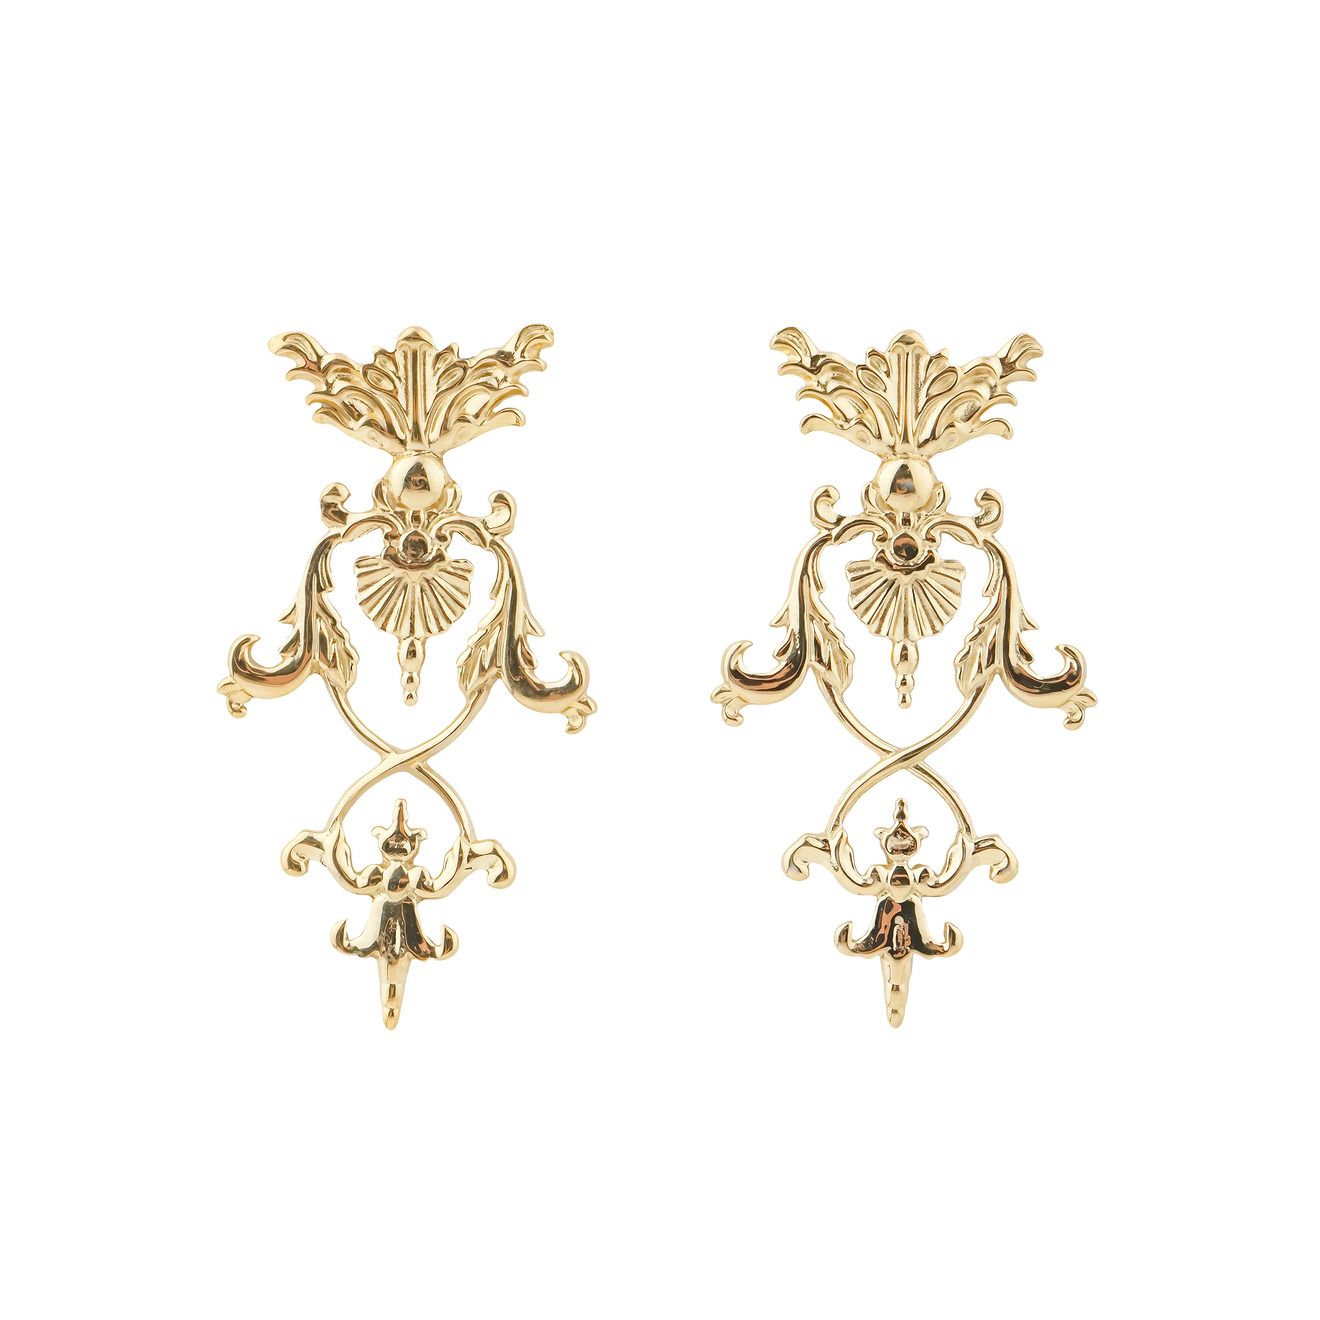 LUTA Jewelry Позолоченные серебряные серьги в барочном стиле luta jewelry позолоченные серебряные серьги в барочном стиле